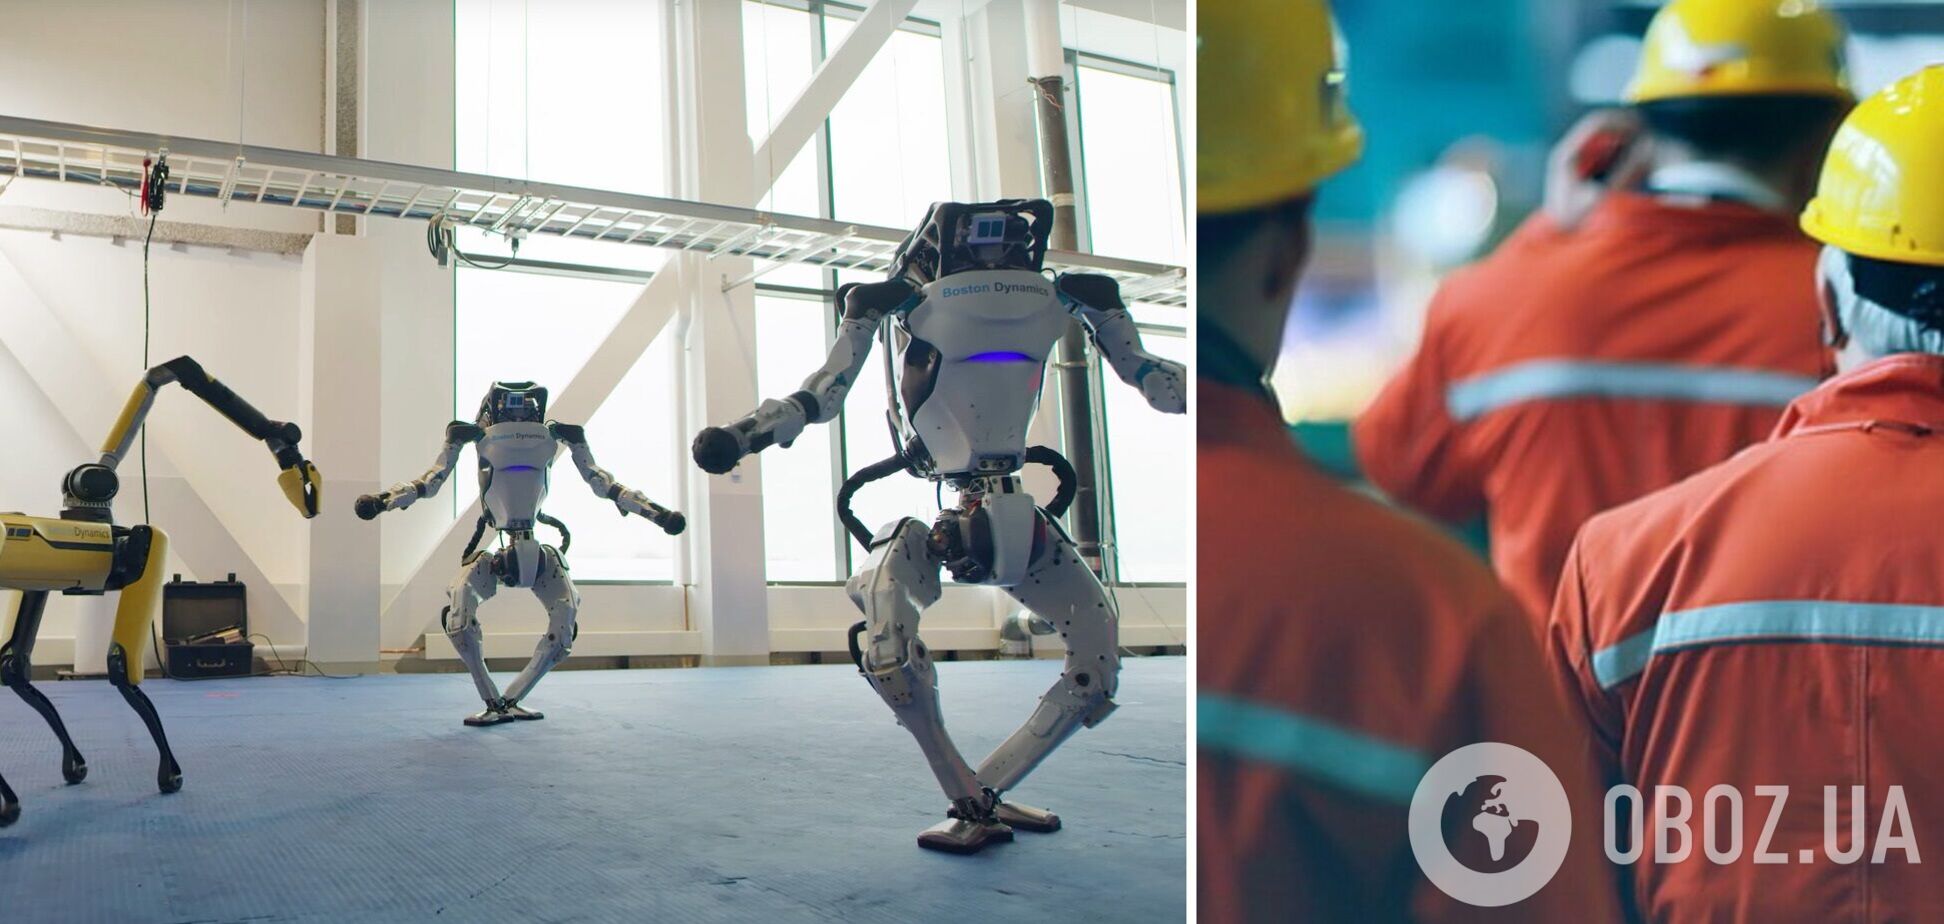 На закупку 'рабочих' роботов американские компании потратили почти 1,5 млрд долларов